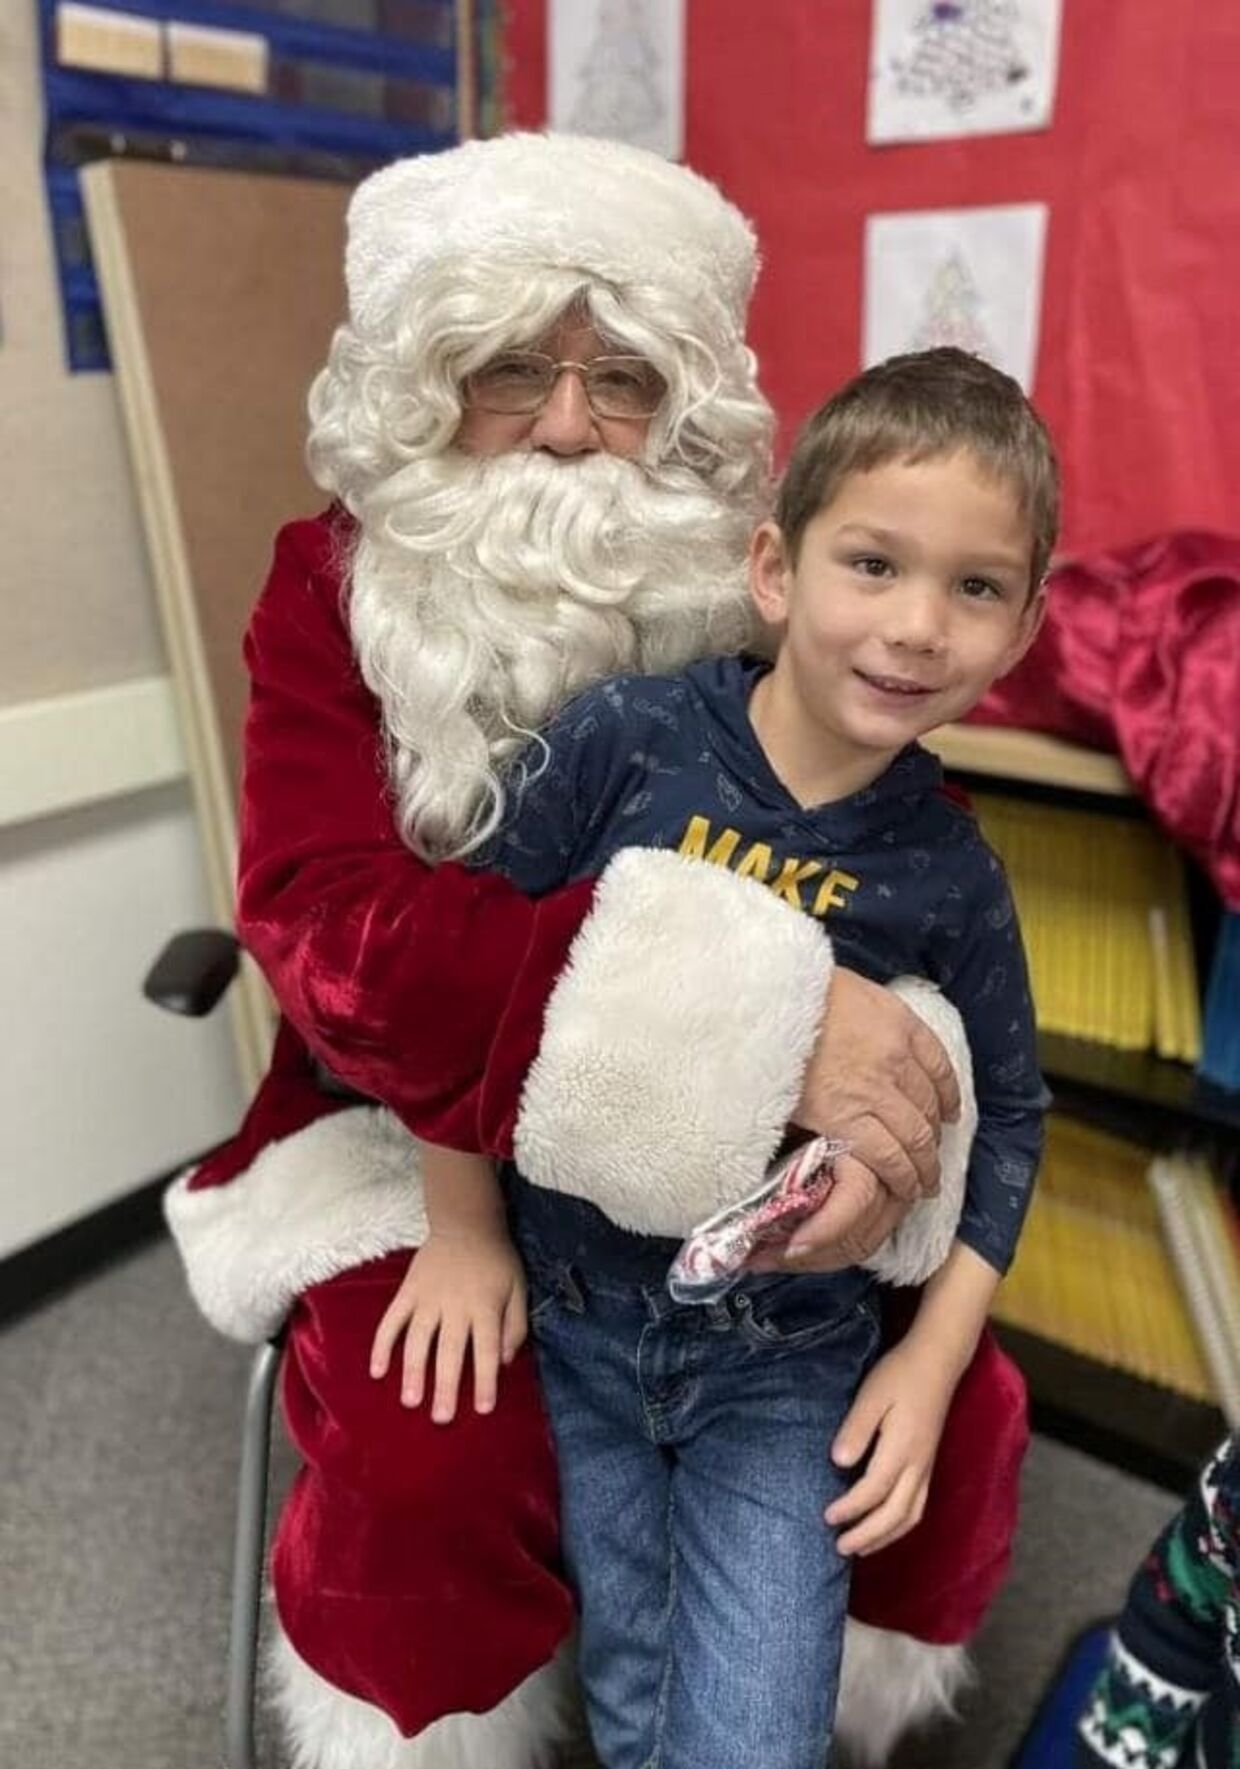 Ifølge faren, Brian Doan, glædede femårige Kyle sig til at komme tilbage i skole mandag, som var første skoledag efter juleferien.